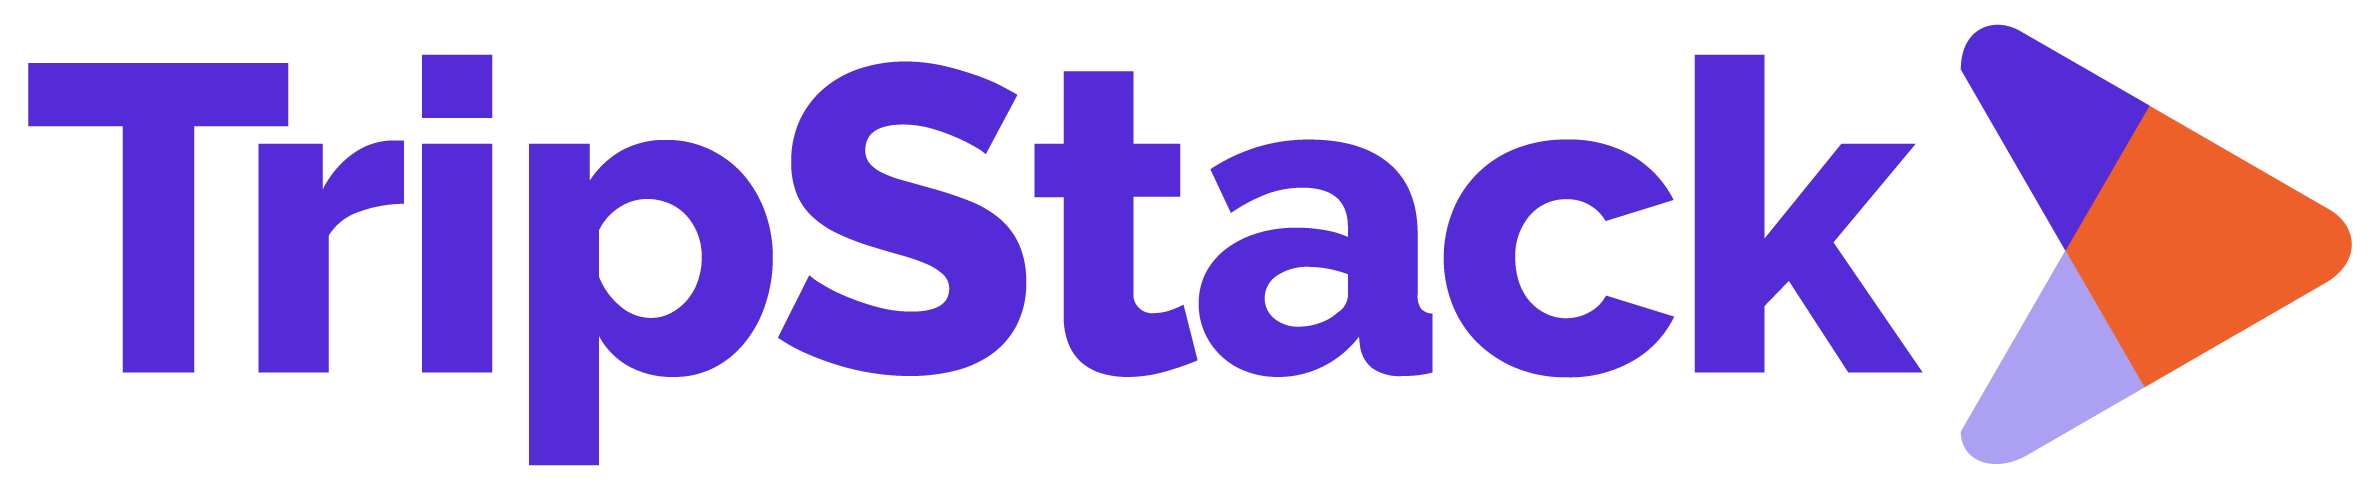 TripStack-logo